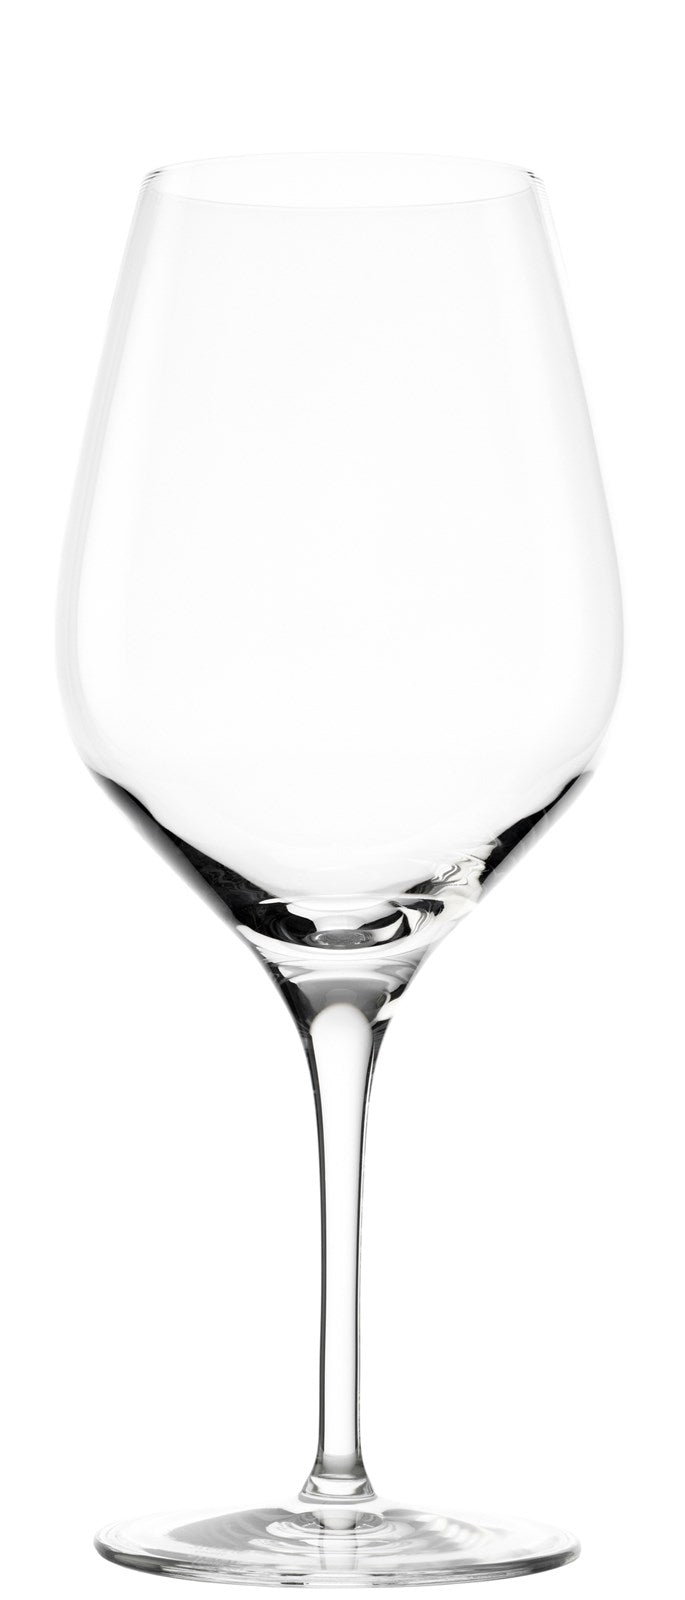 Exquisit Bordeaux-Pokal, 645ml h:230mm - KAQTU Design